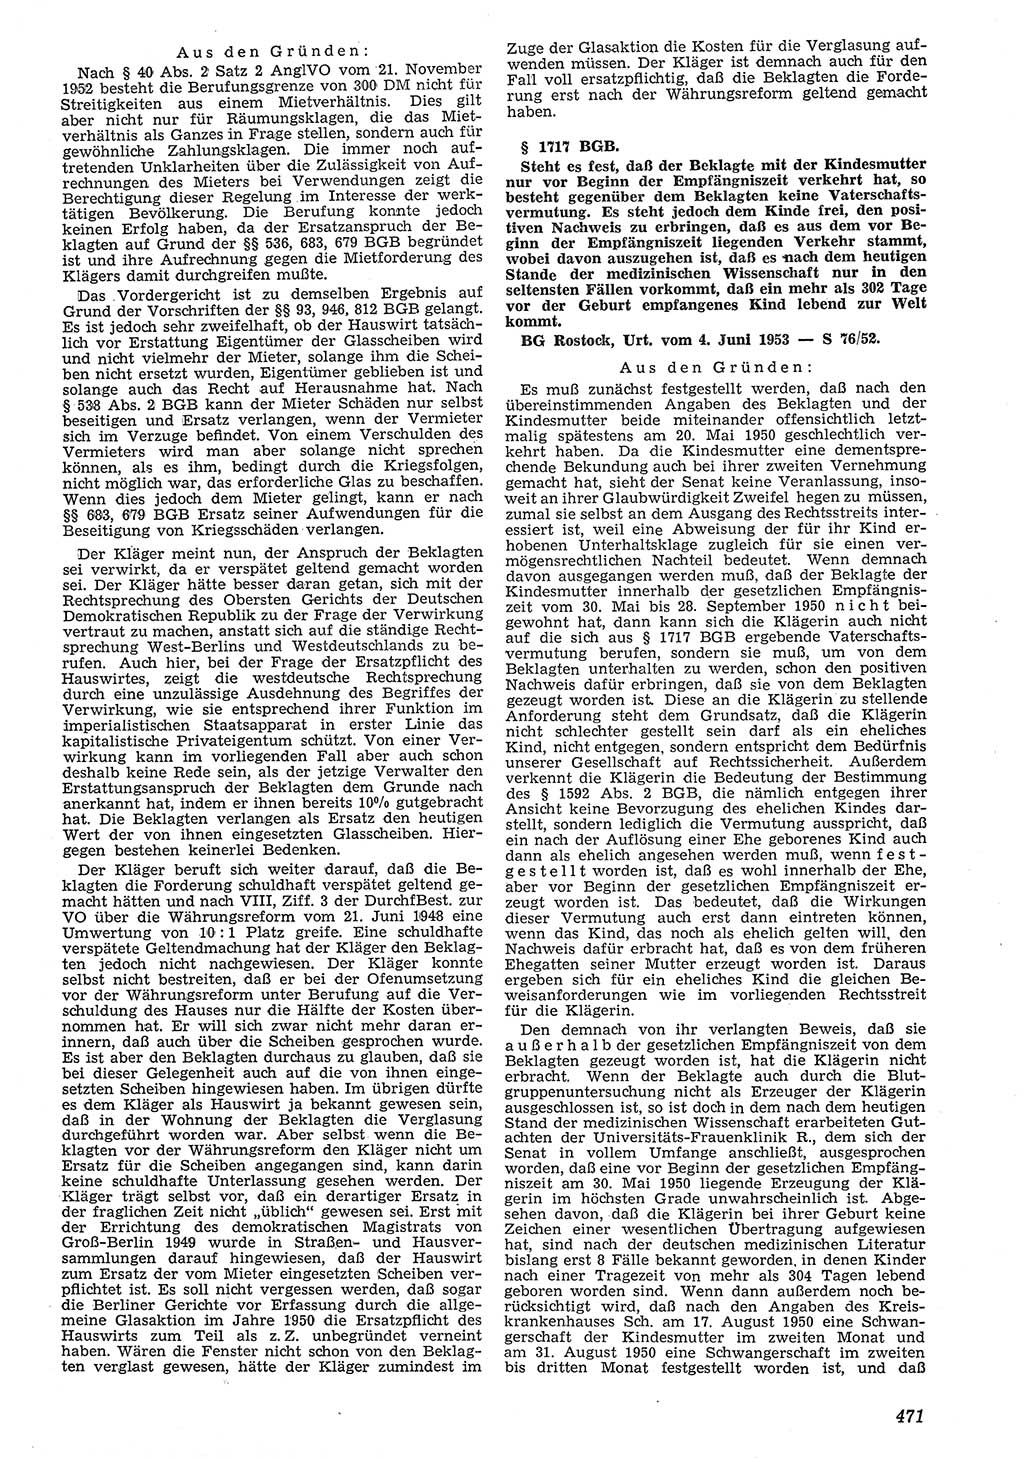 Neue Justiz (NJ), Zeitschrift für Recht und Rechtswissenschaft [Deutsche Demokratische Republik (DDR)], 7. Jahrgang 1953, Seite 471 (NJ DDR 1953, S. 471)